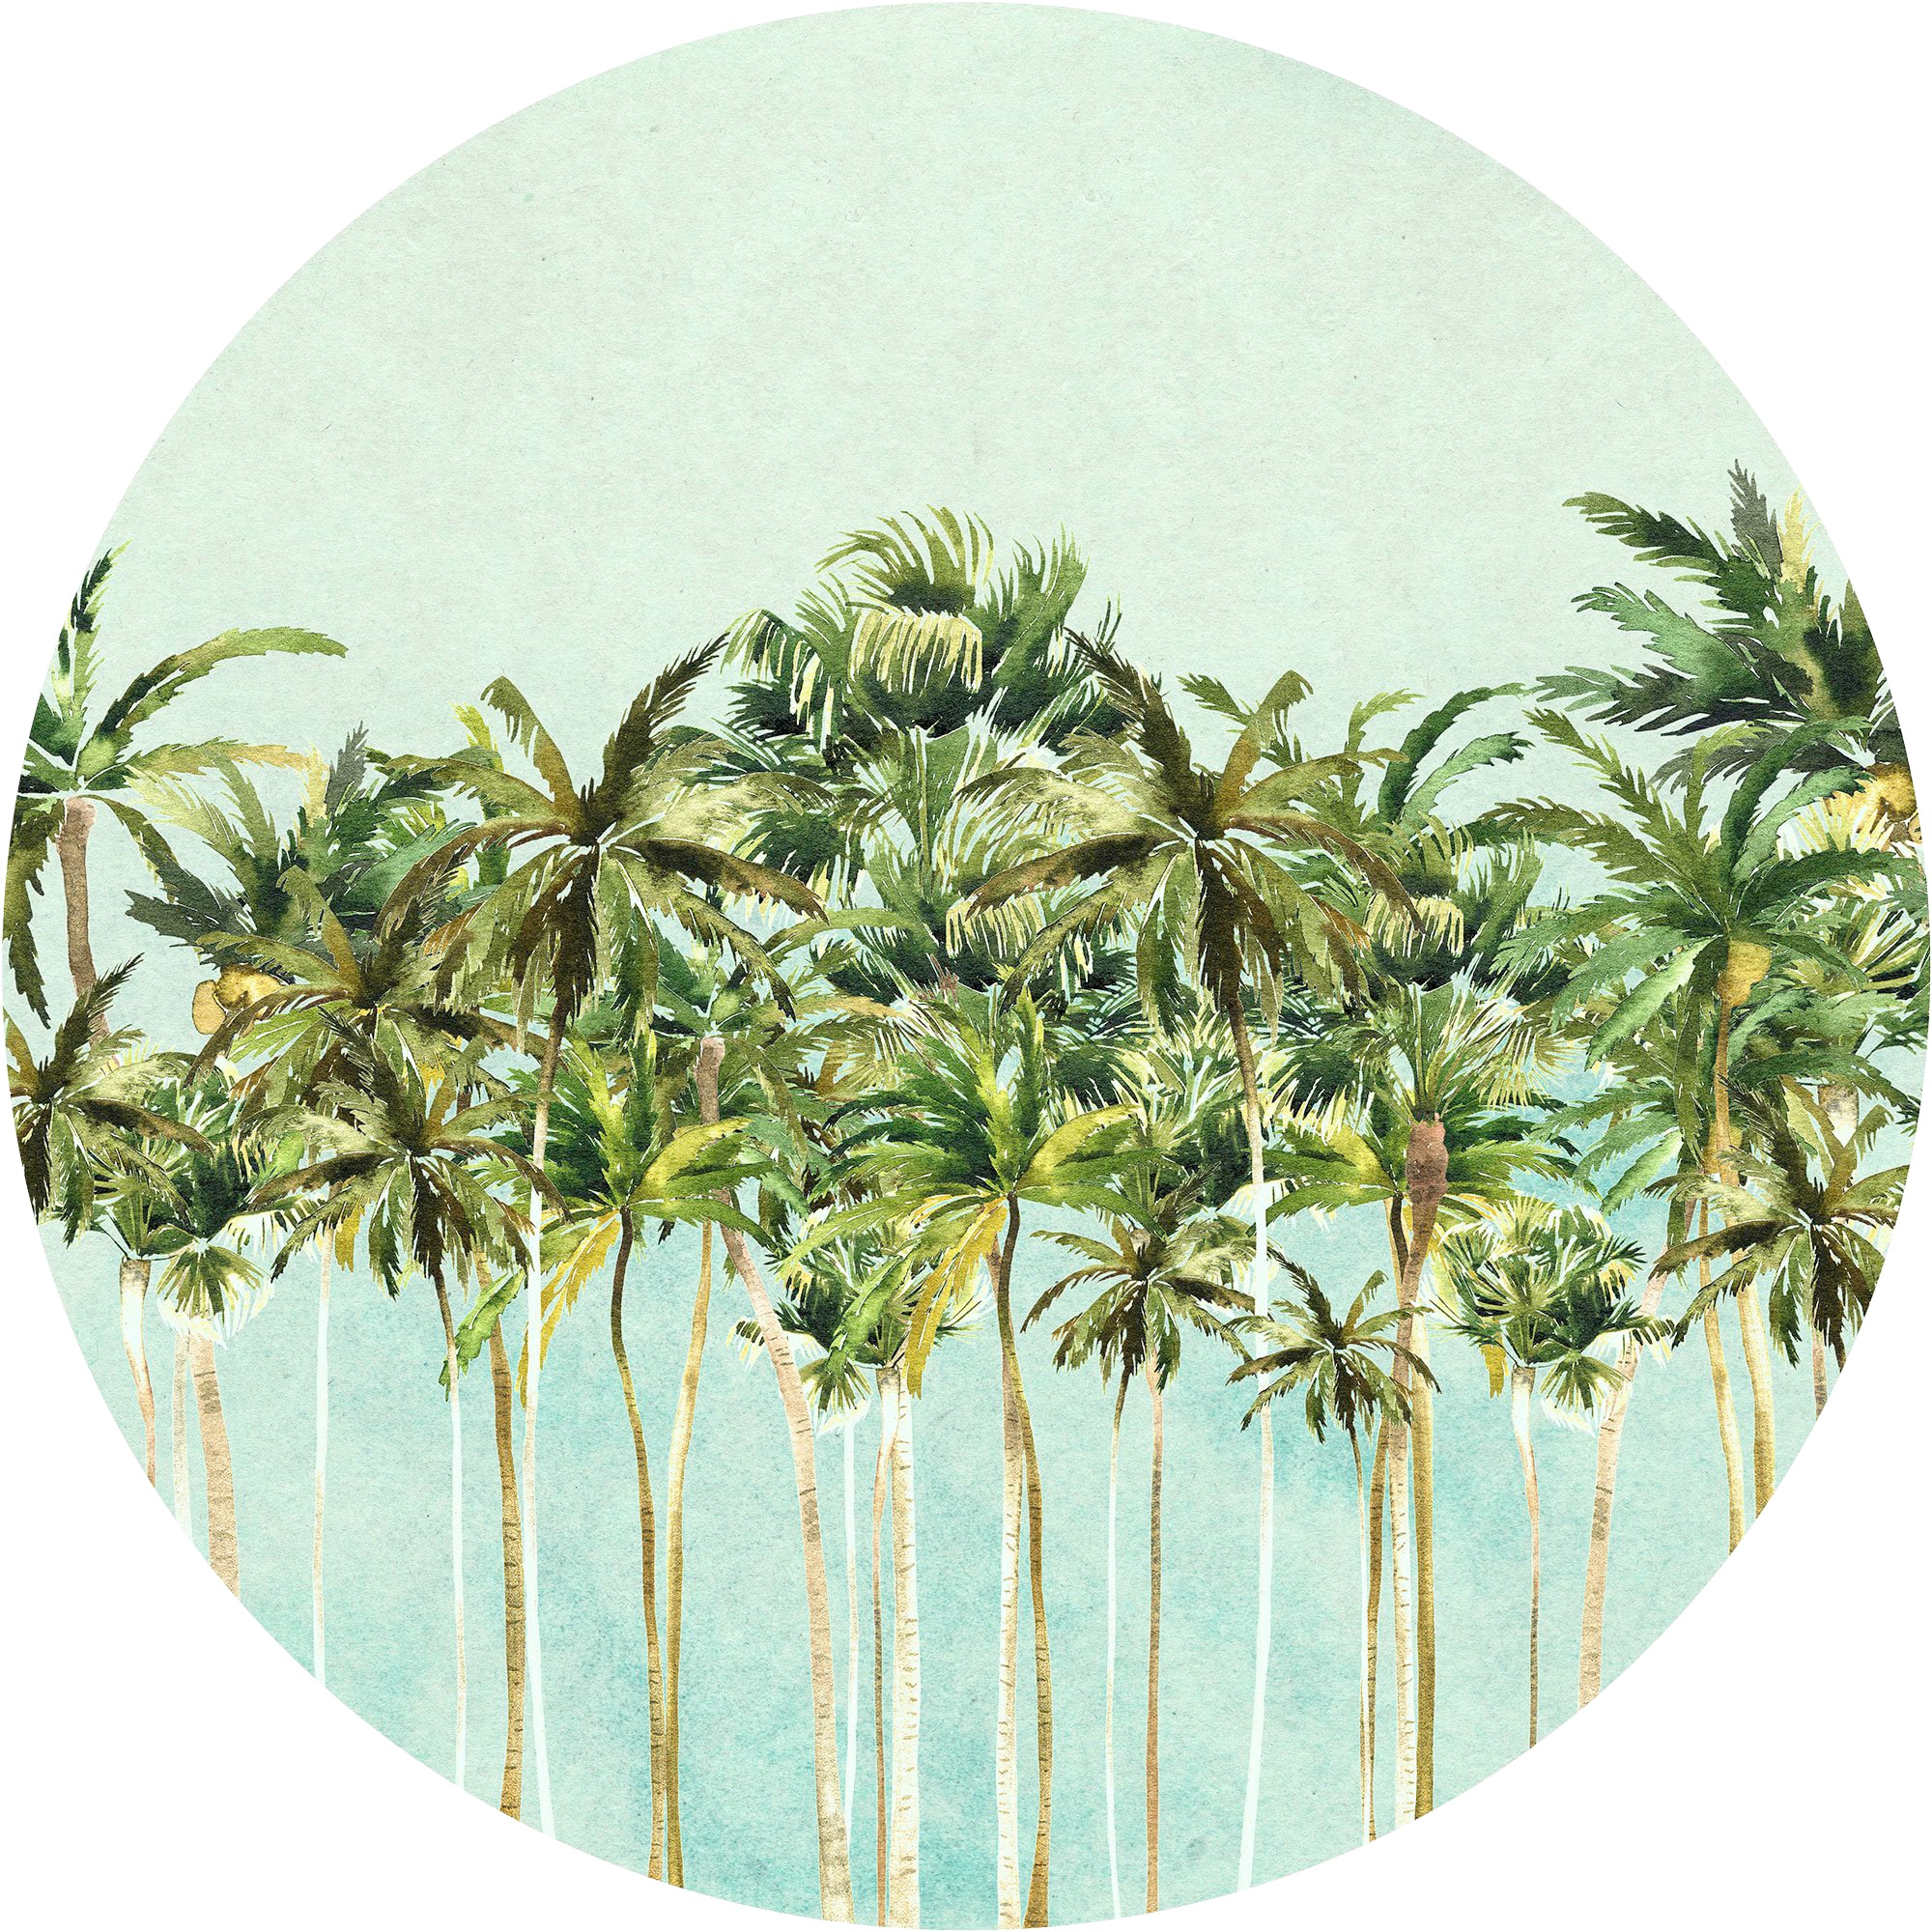 Fototapete »Coconut Trees«, 125x125 cm (Breite x Höhe), rund und selbstklebend